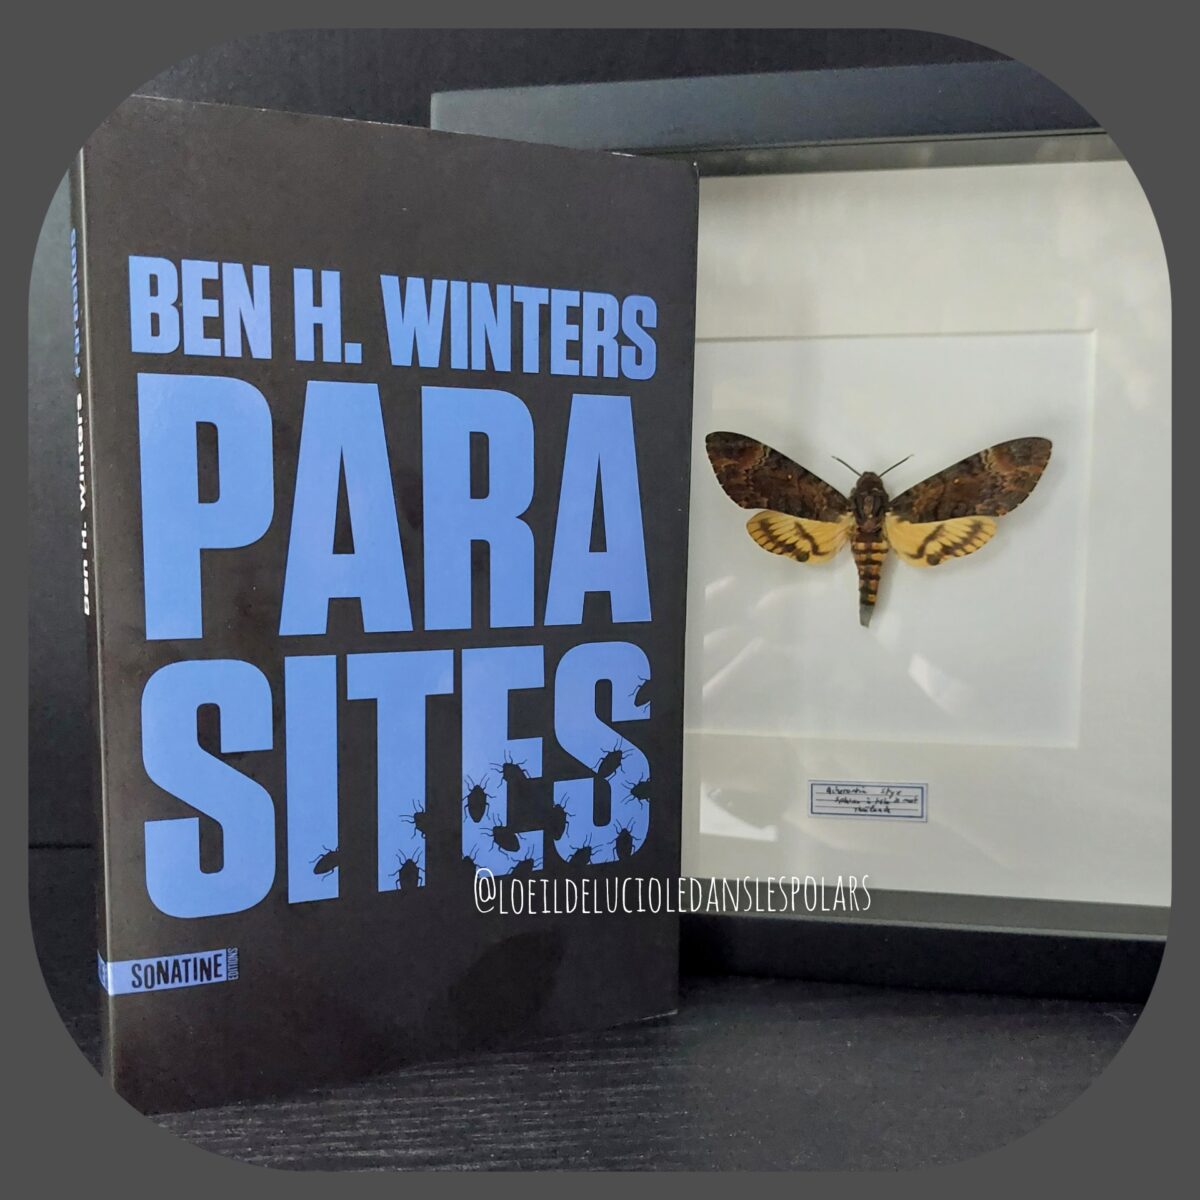 Parasites de Ben H. Winters